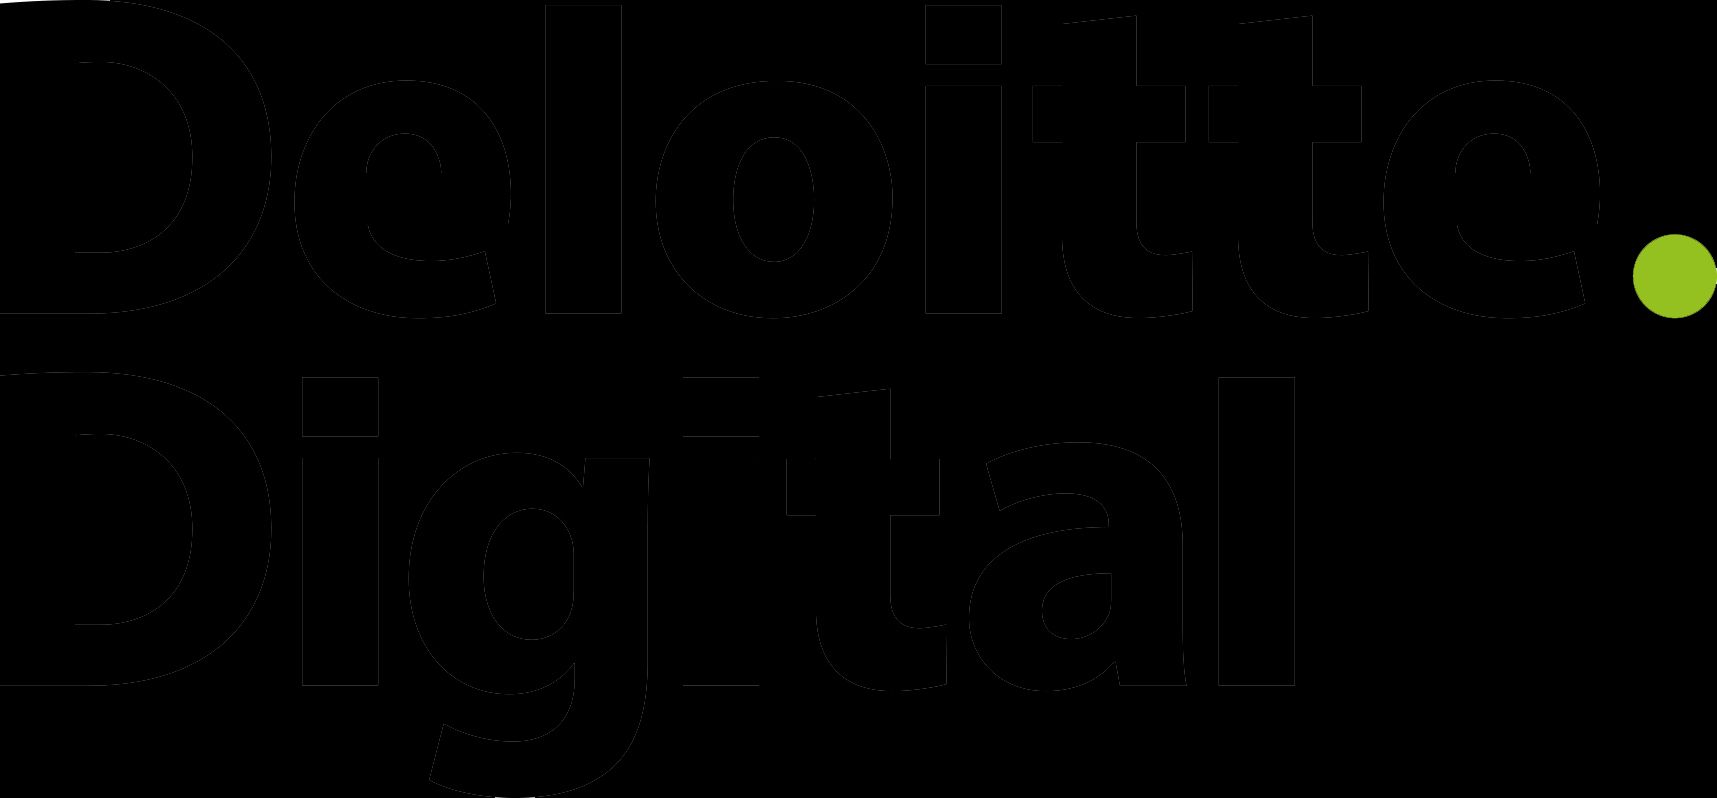 Logo for Deloitte Digital